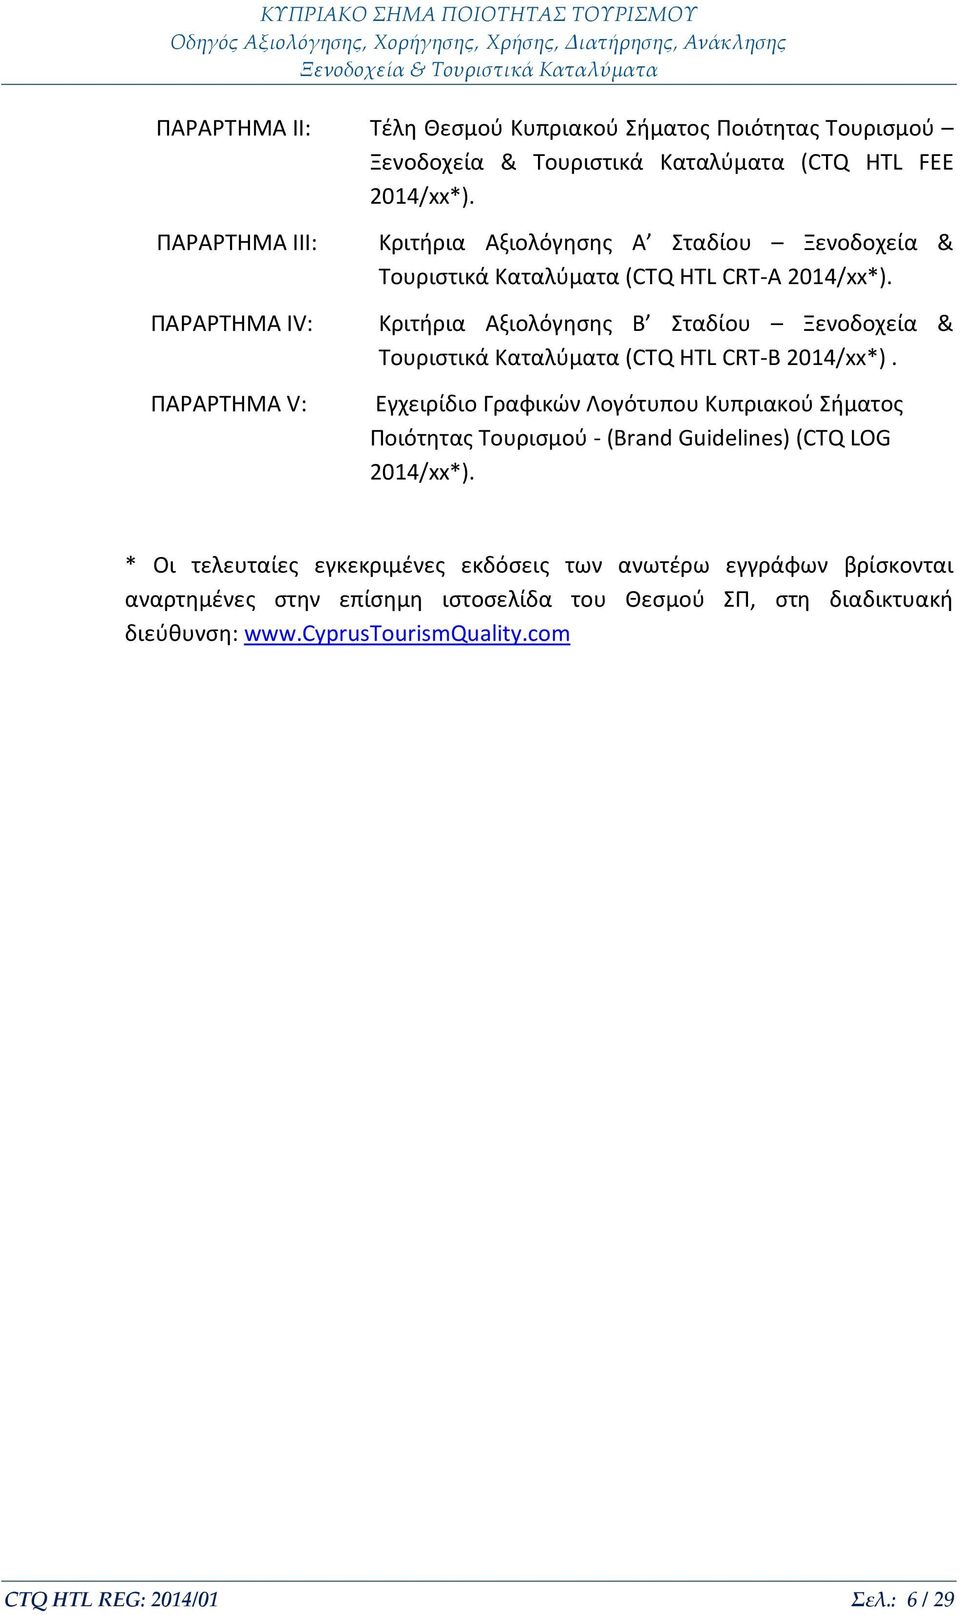 Κριτήρια Αξιολόγησης Β Σταδίου Ξενοδοχεία & Τουριστικά Καταλύματα (CTQ ΗΤL CRT-B 2014/xx*).